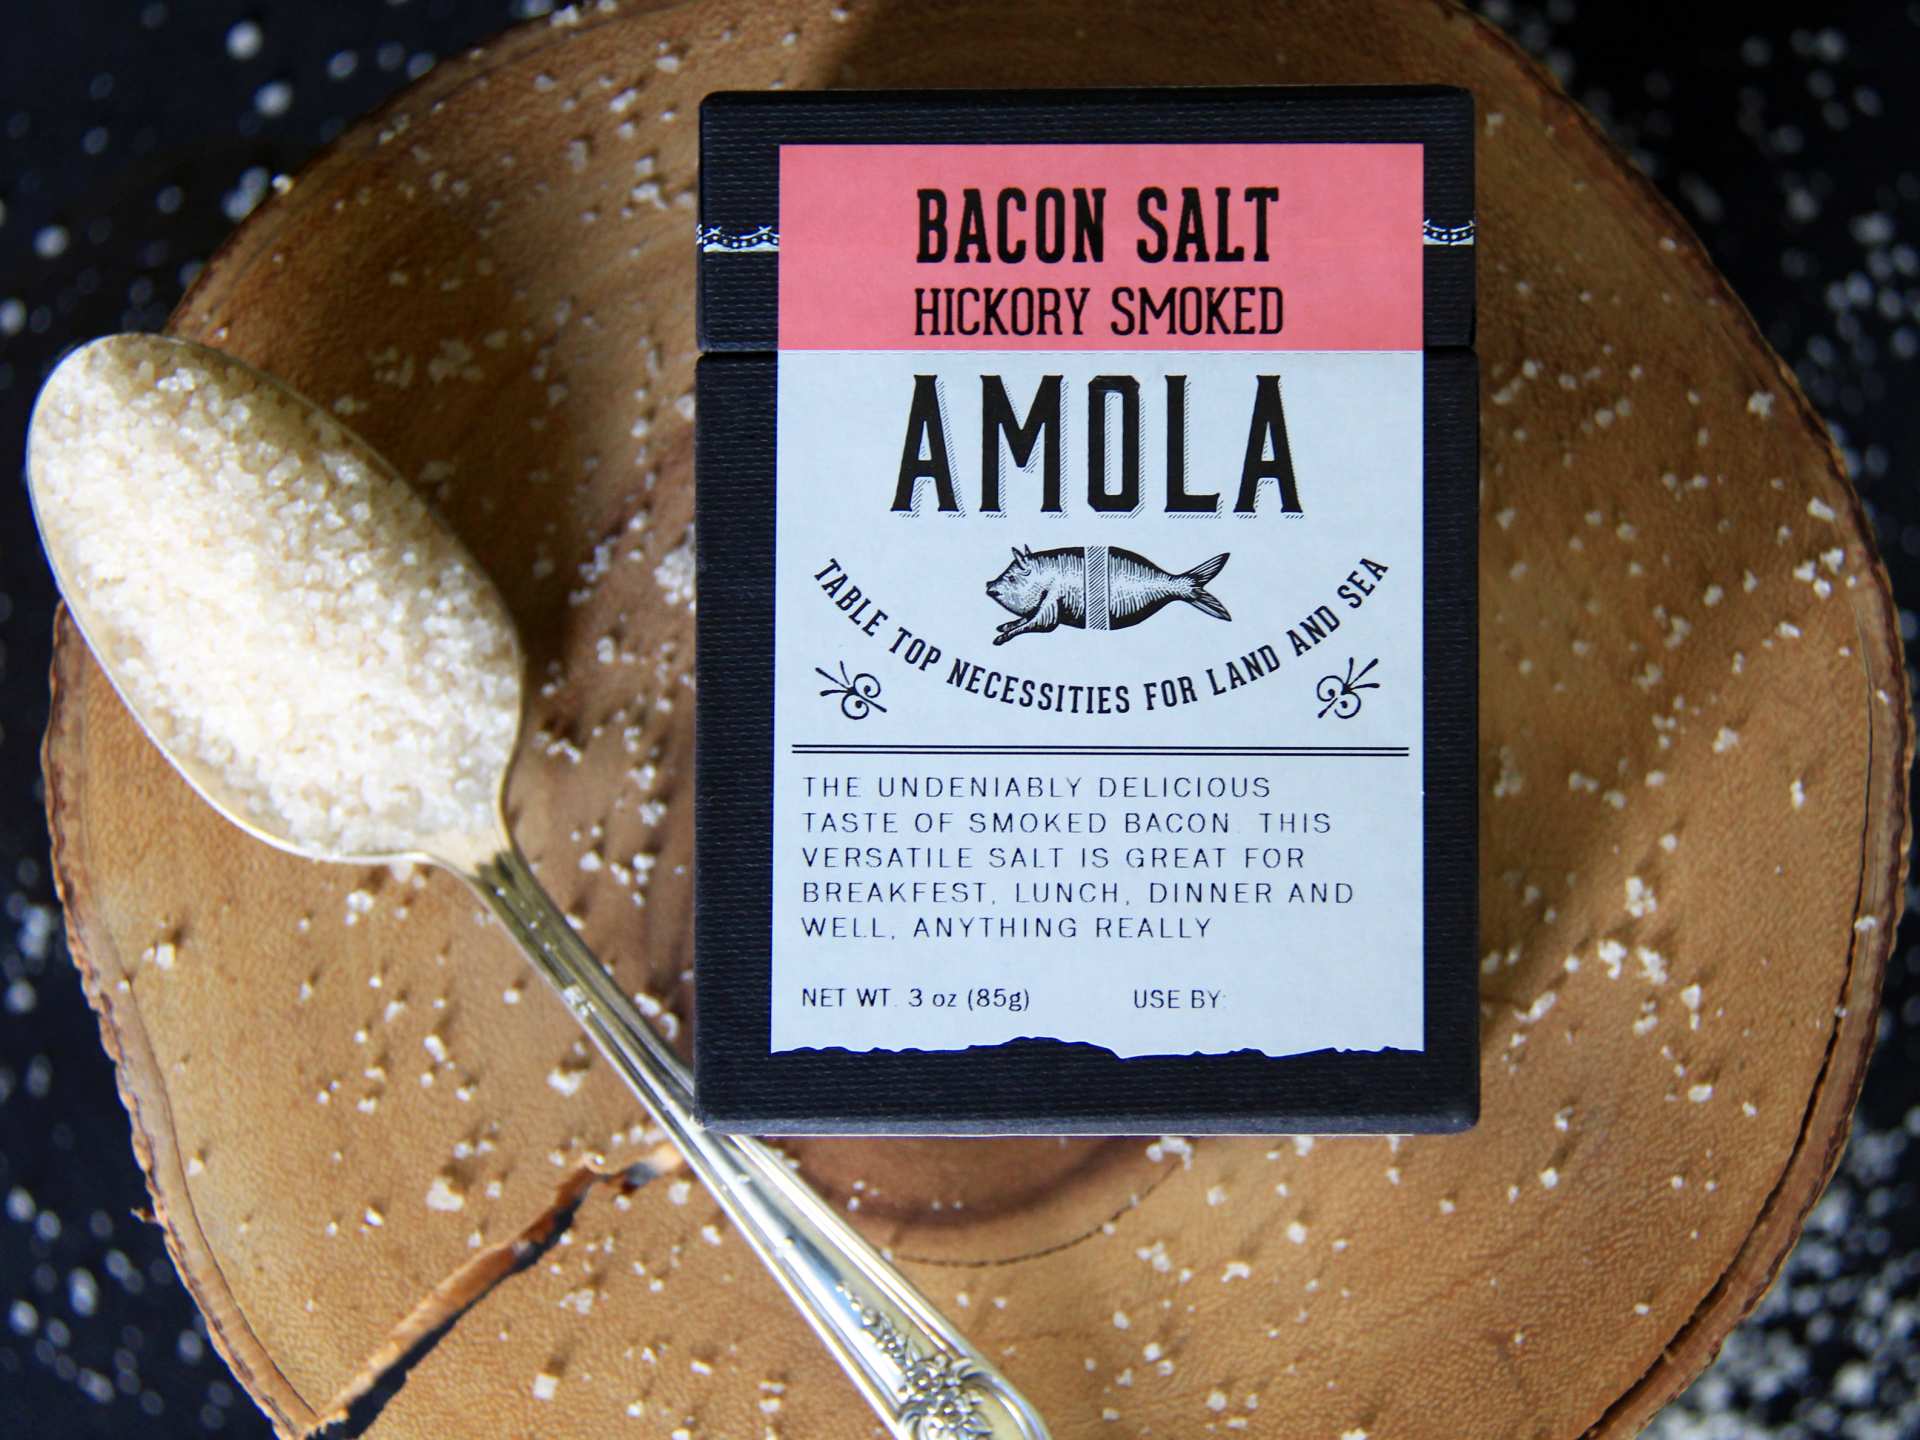 Is salt bad for you? | Amola Hickory Smoked Bacon Salt